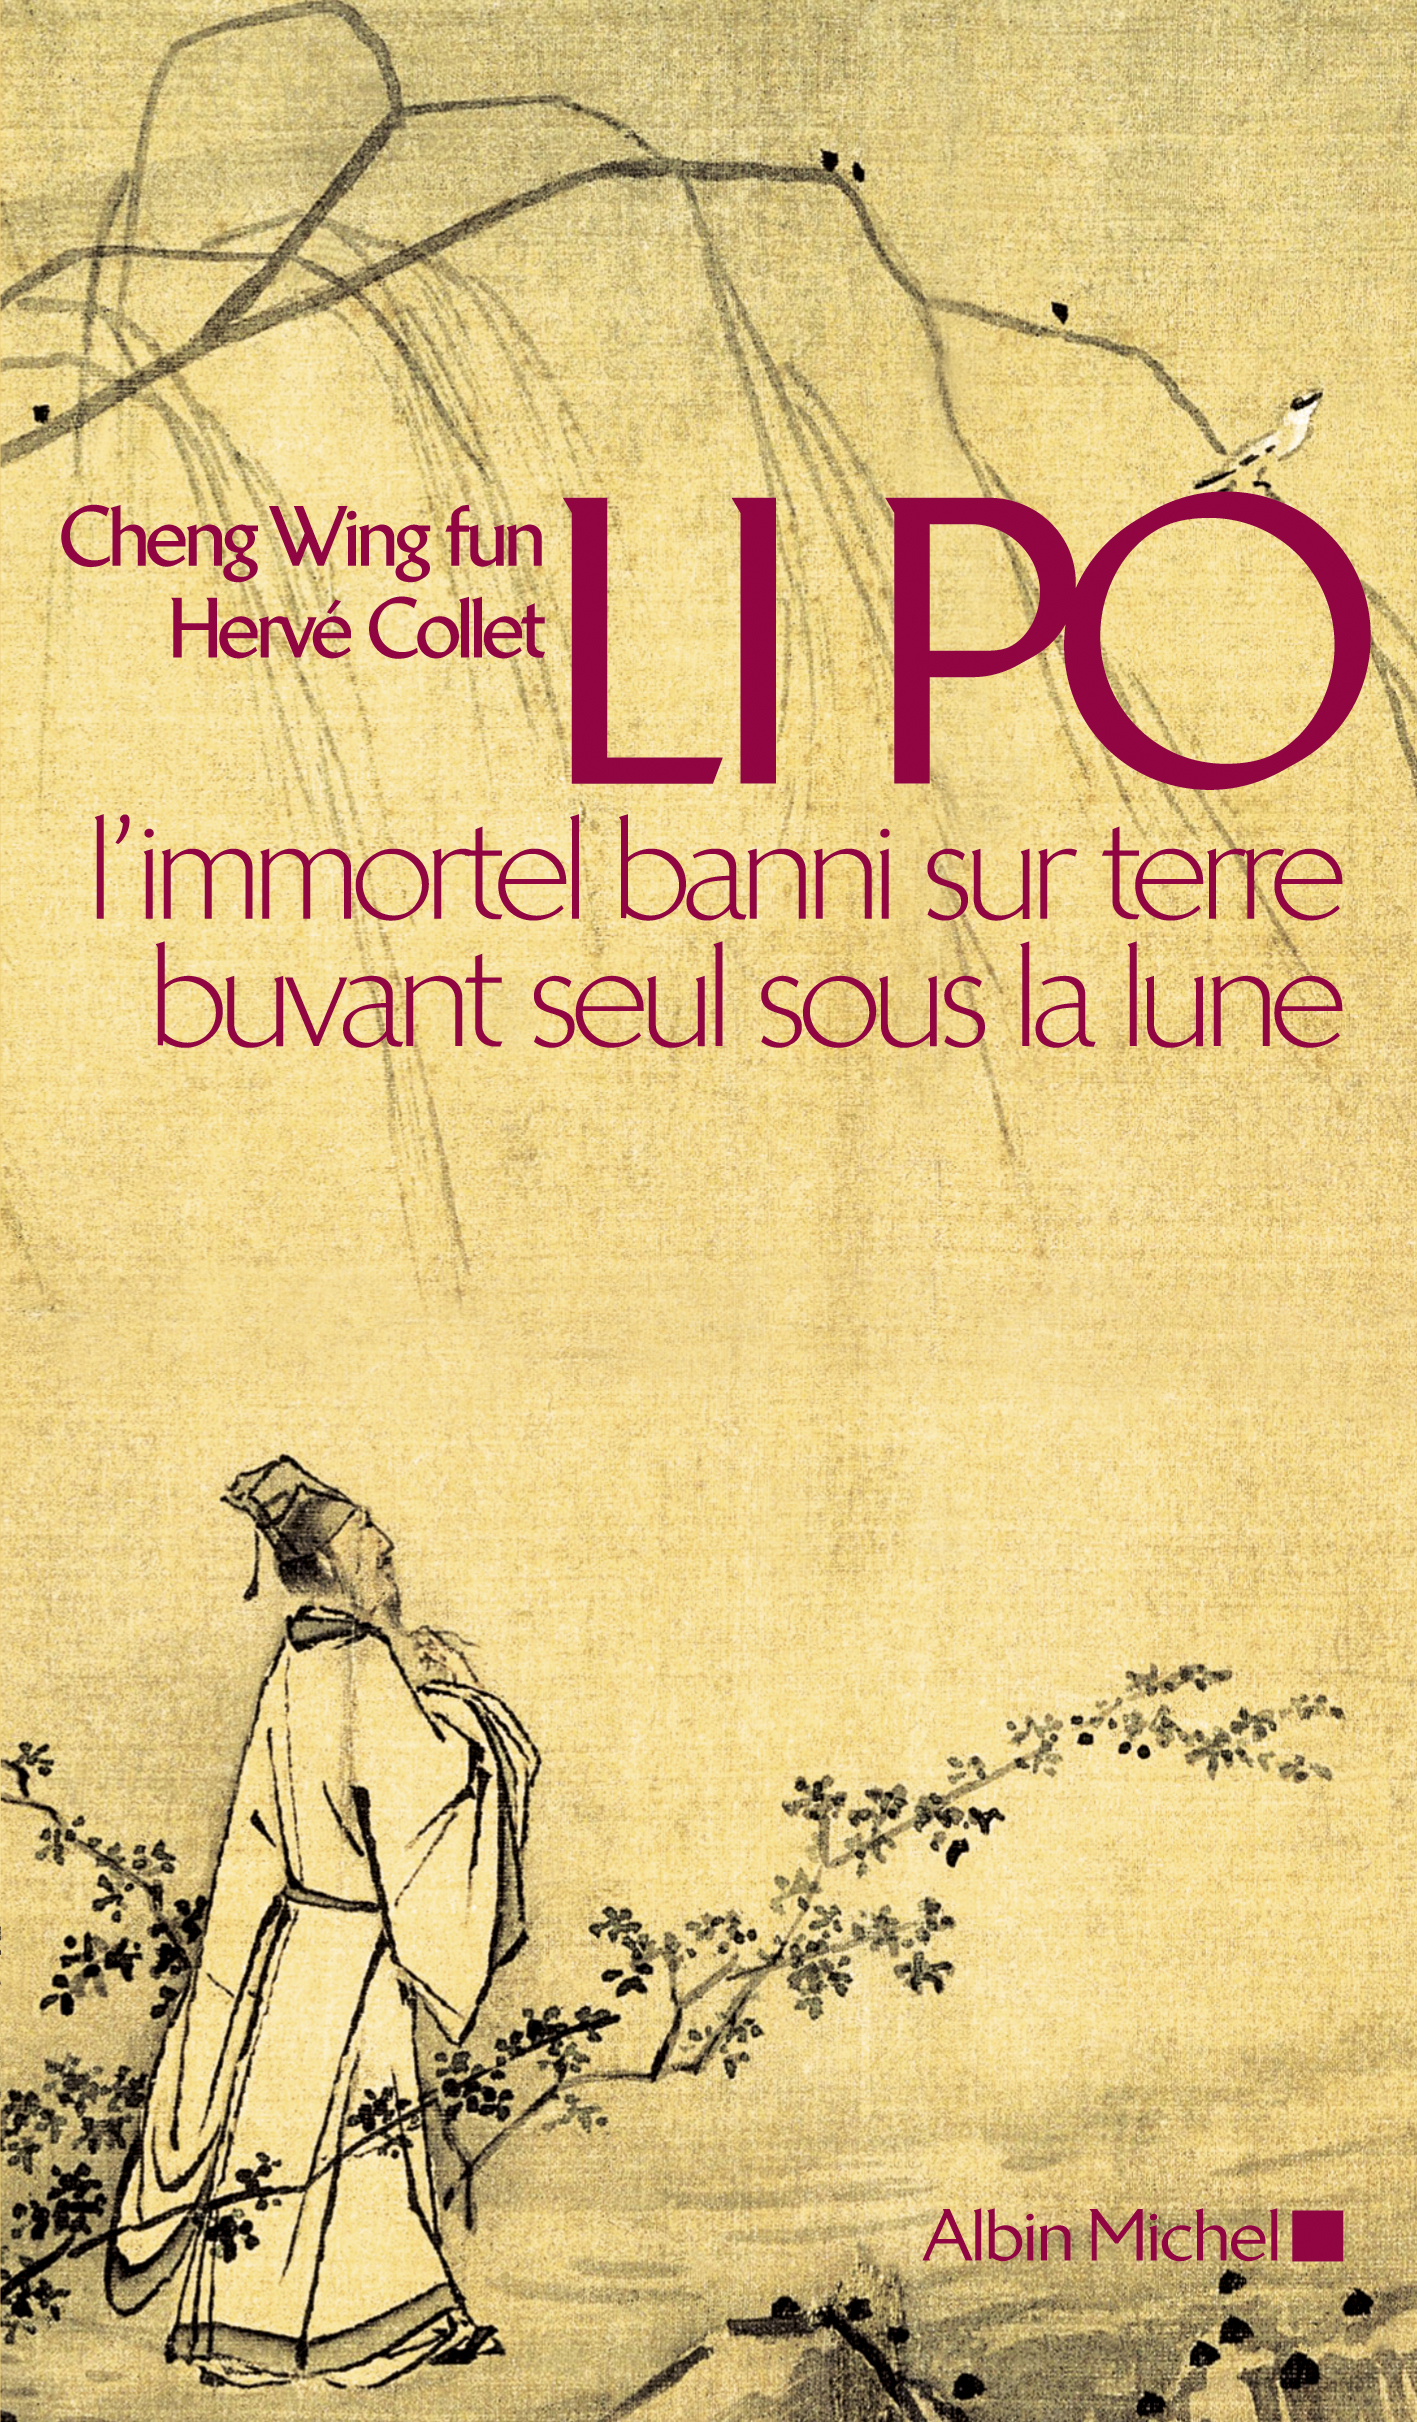 Couverture du livre Li Po